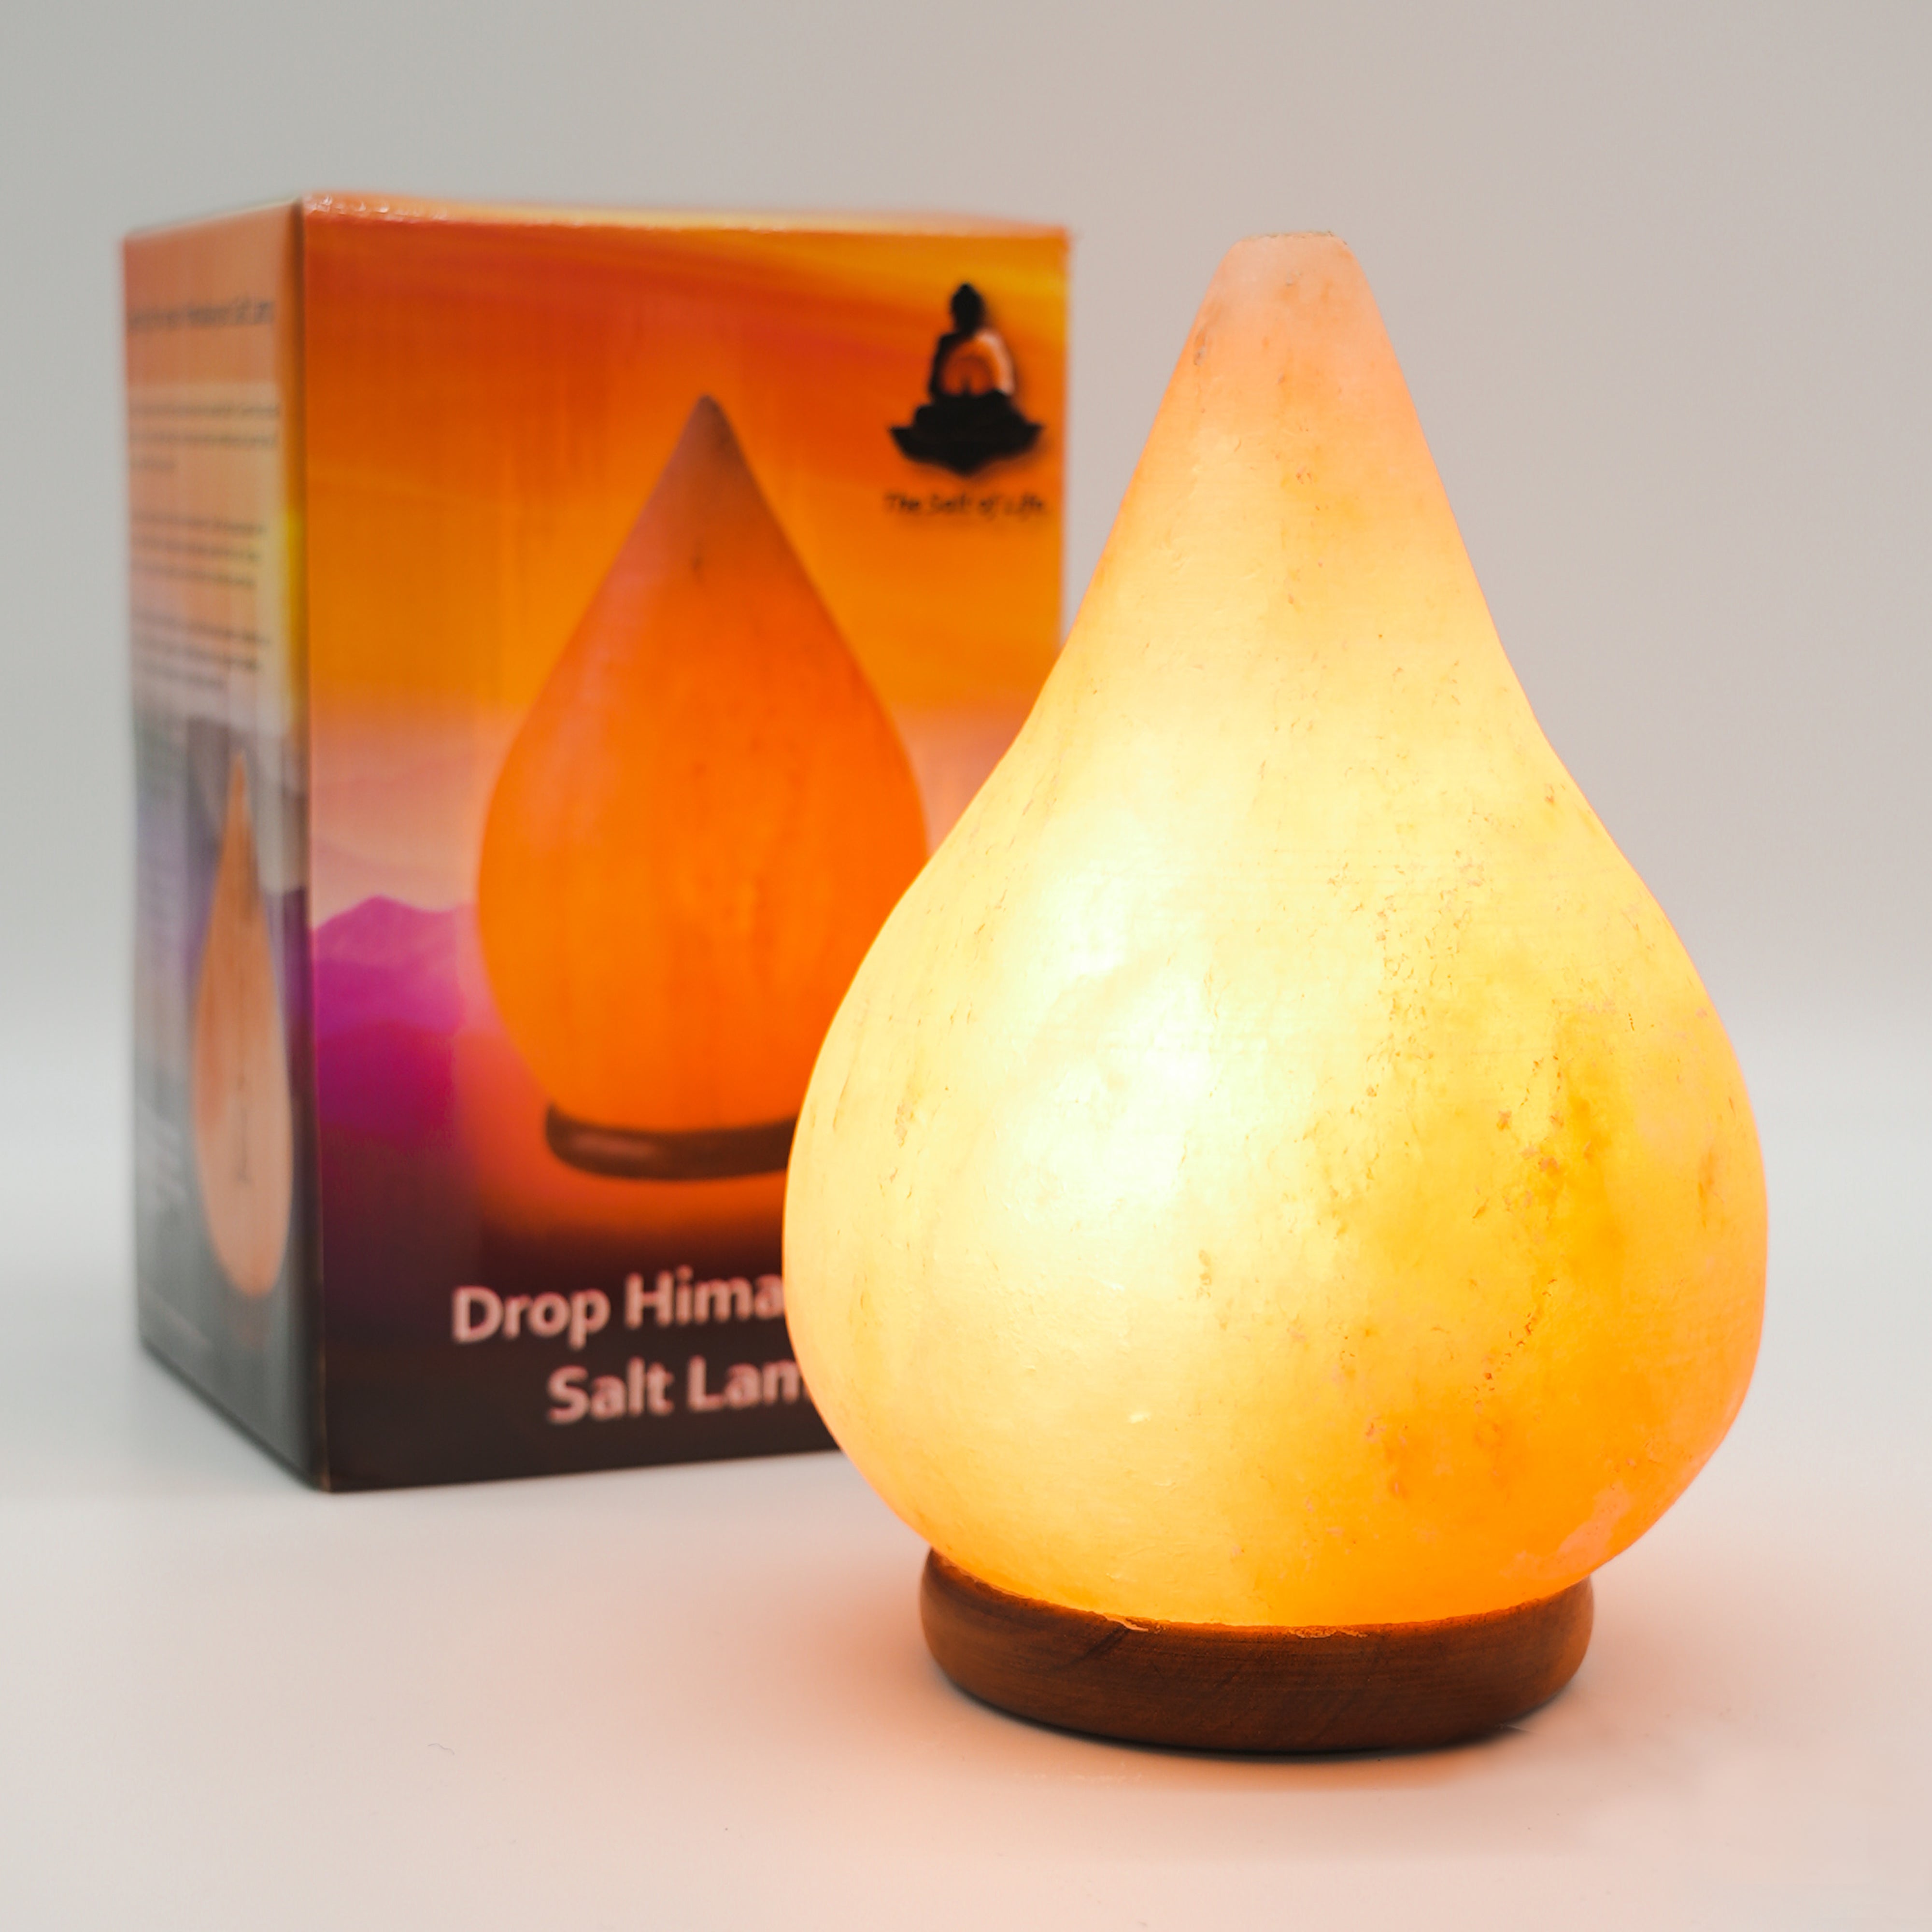 The Salt of Life - Himalayan Salt Lamp - Drop